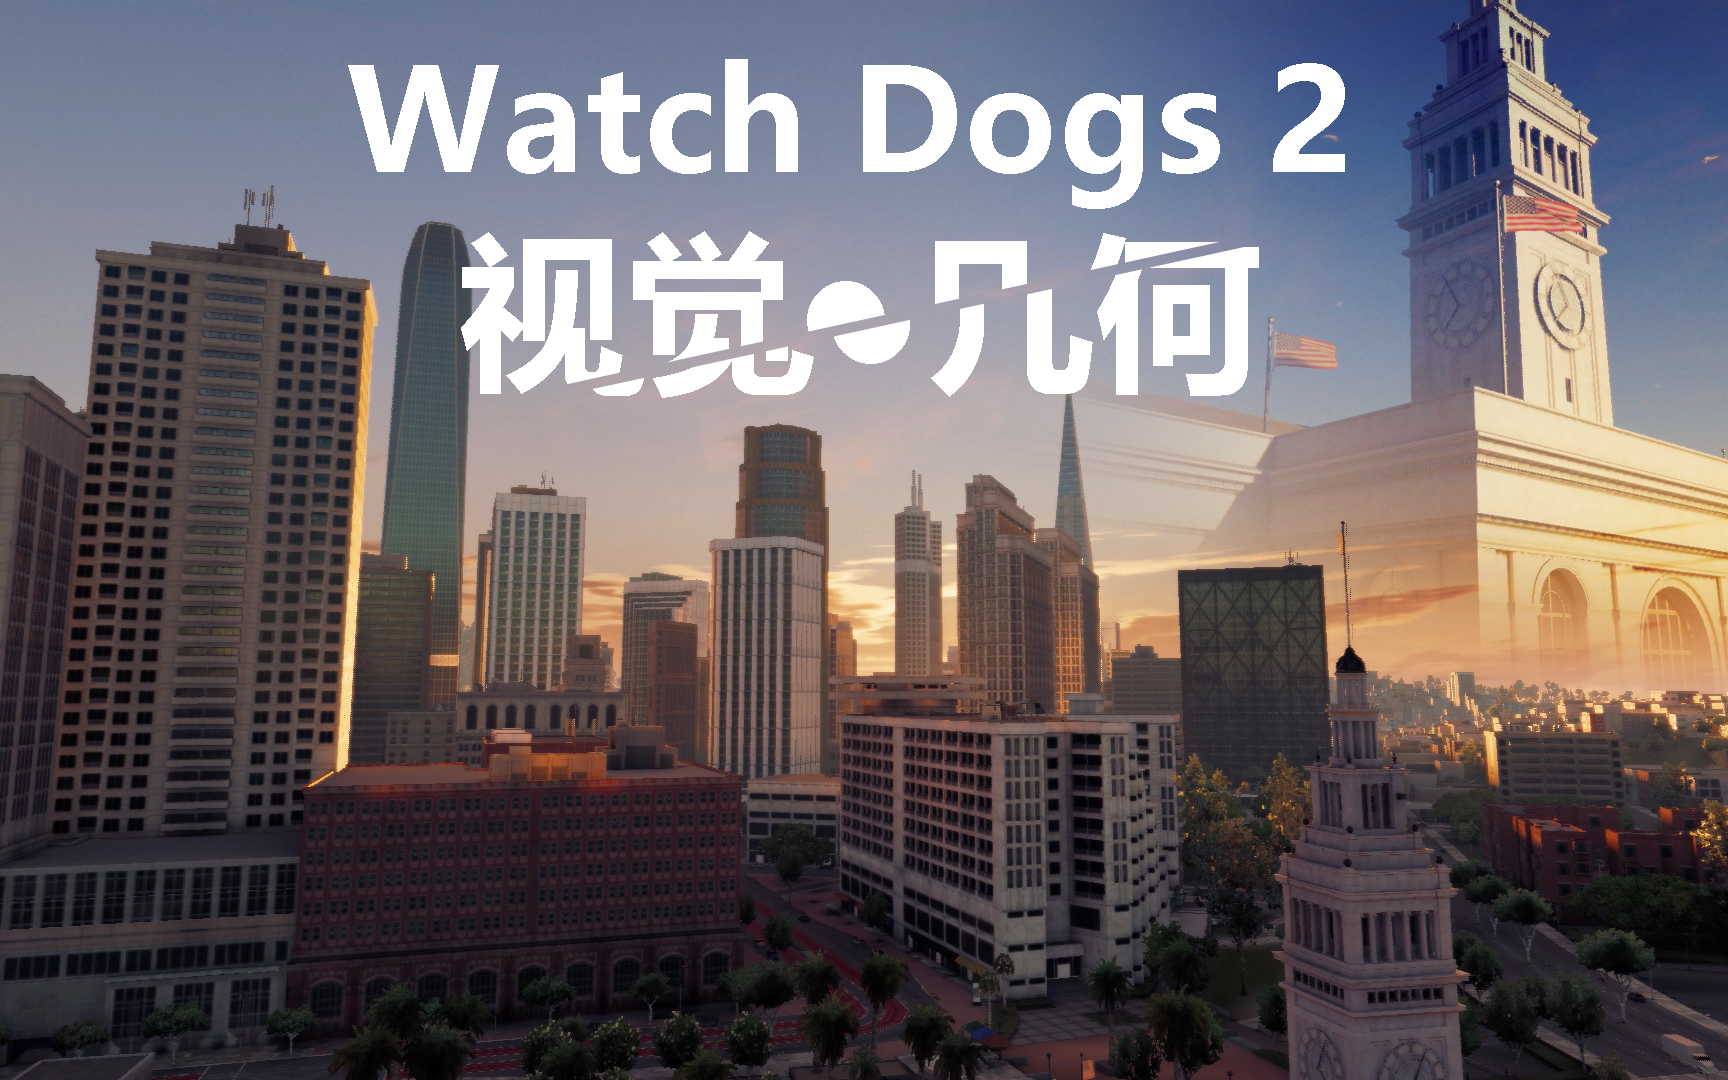 看门狗2:几乎没有游戏可以超越看门狗2的氛围感，精心打造最高级的游戏观景视频。